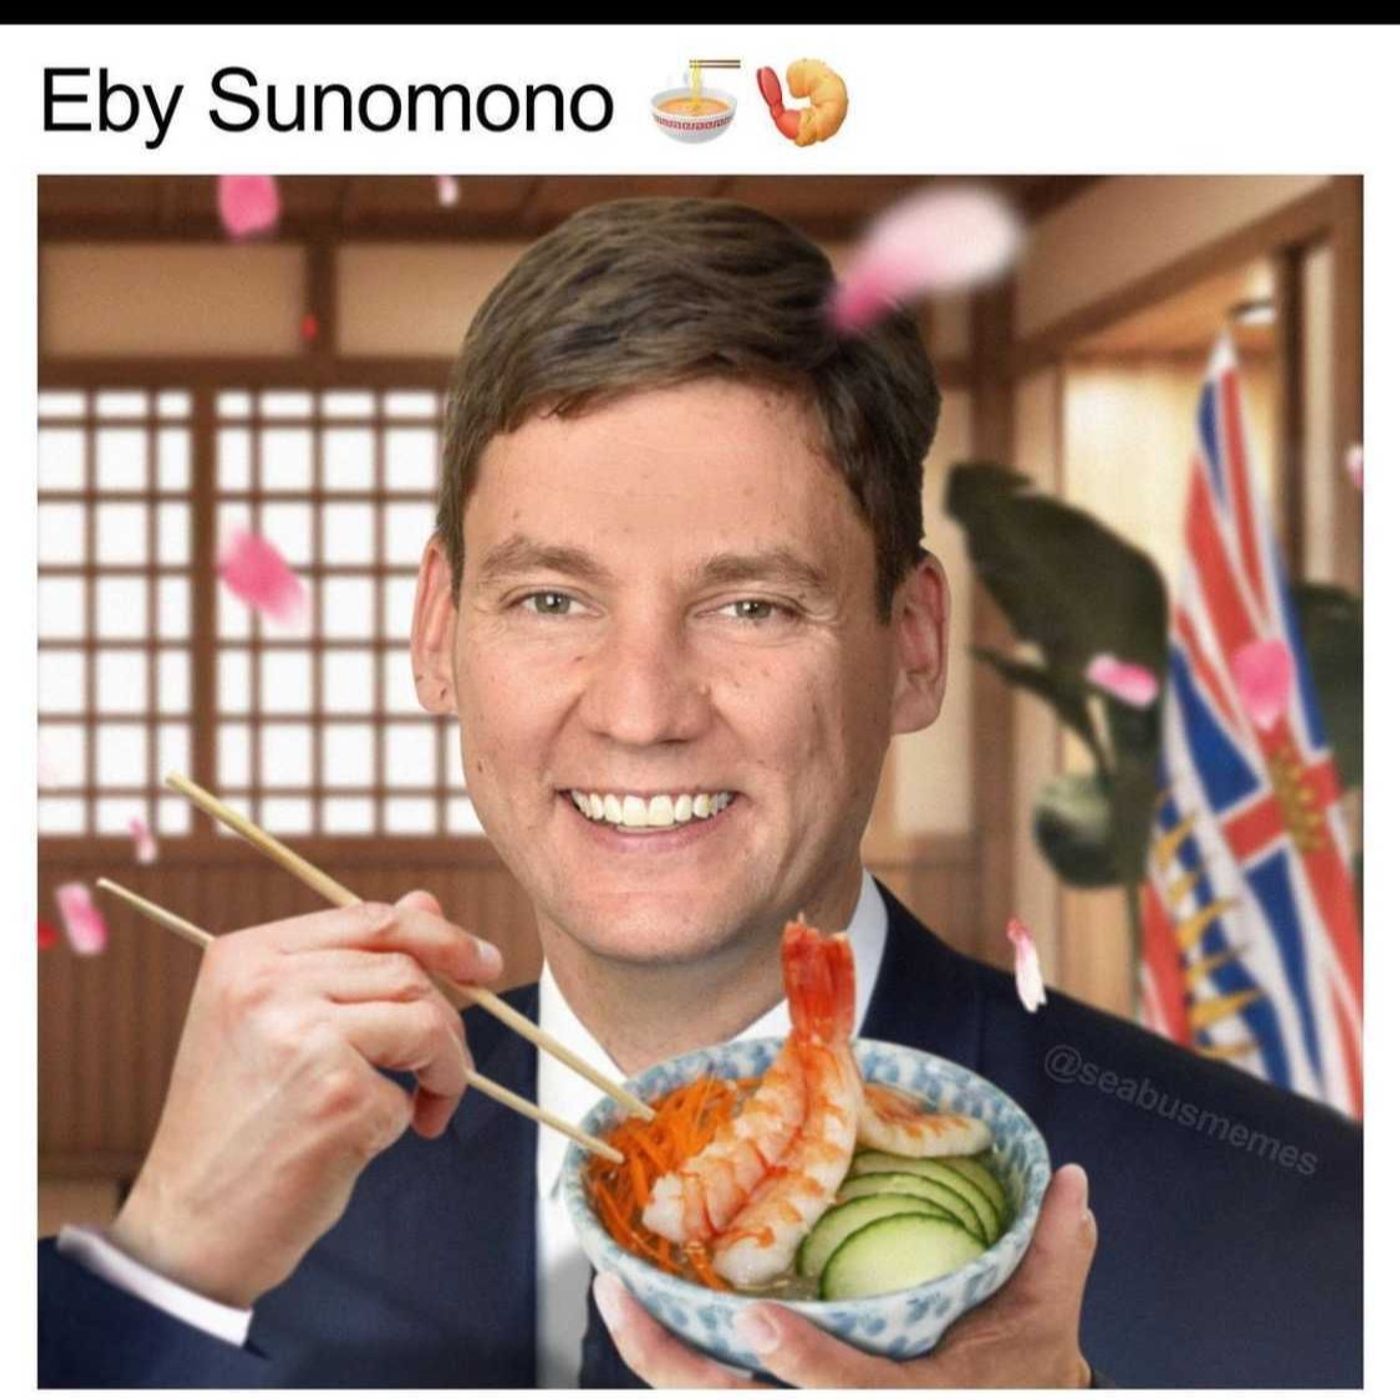 Eby Sunomono